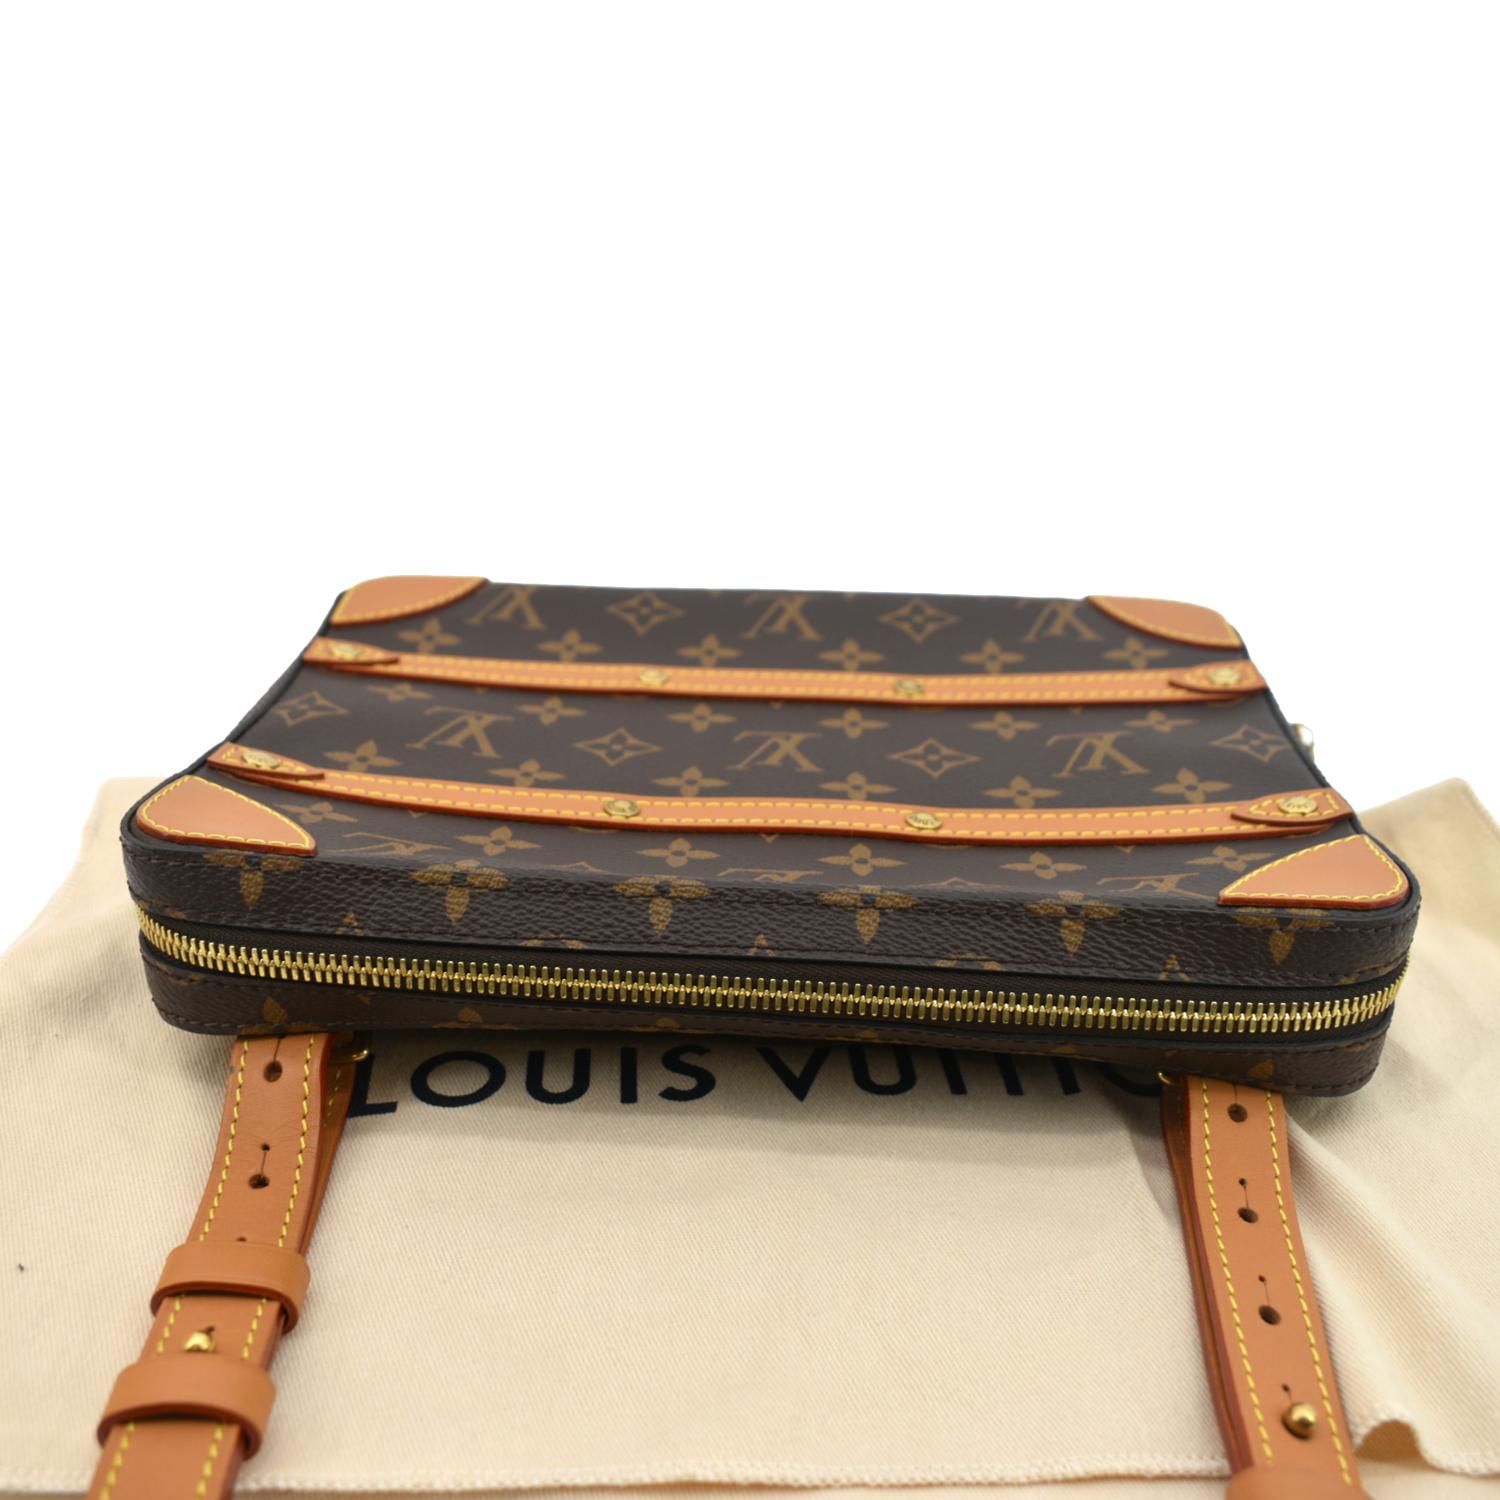 Louis Vuitton Soft Trunk Bag Monogram Canvas with LV Friend Patch